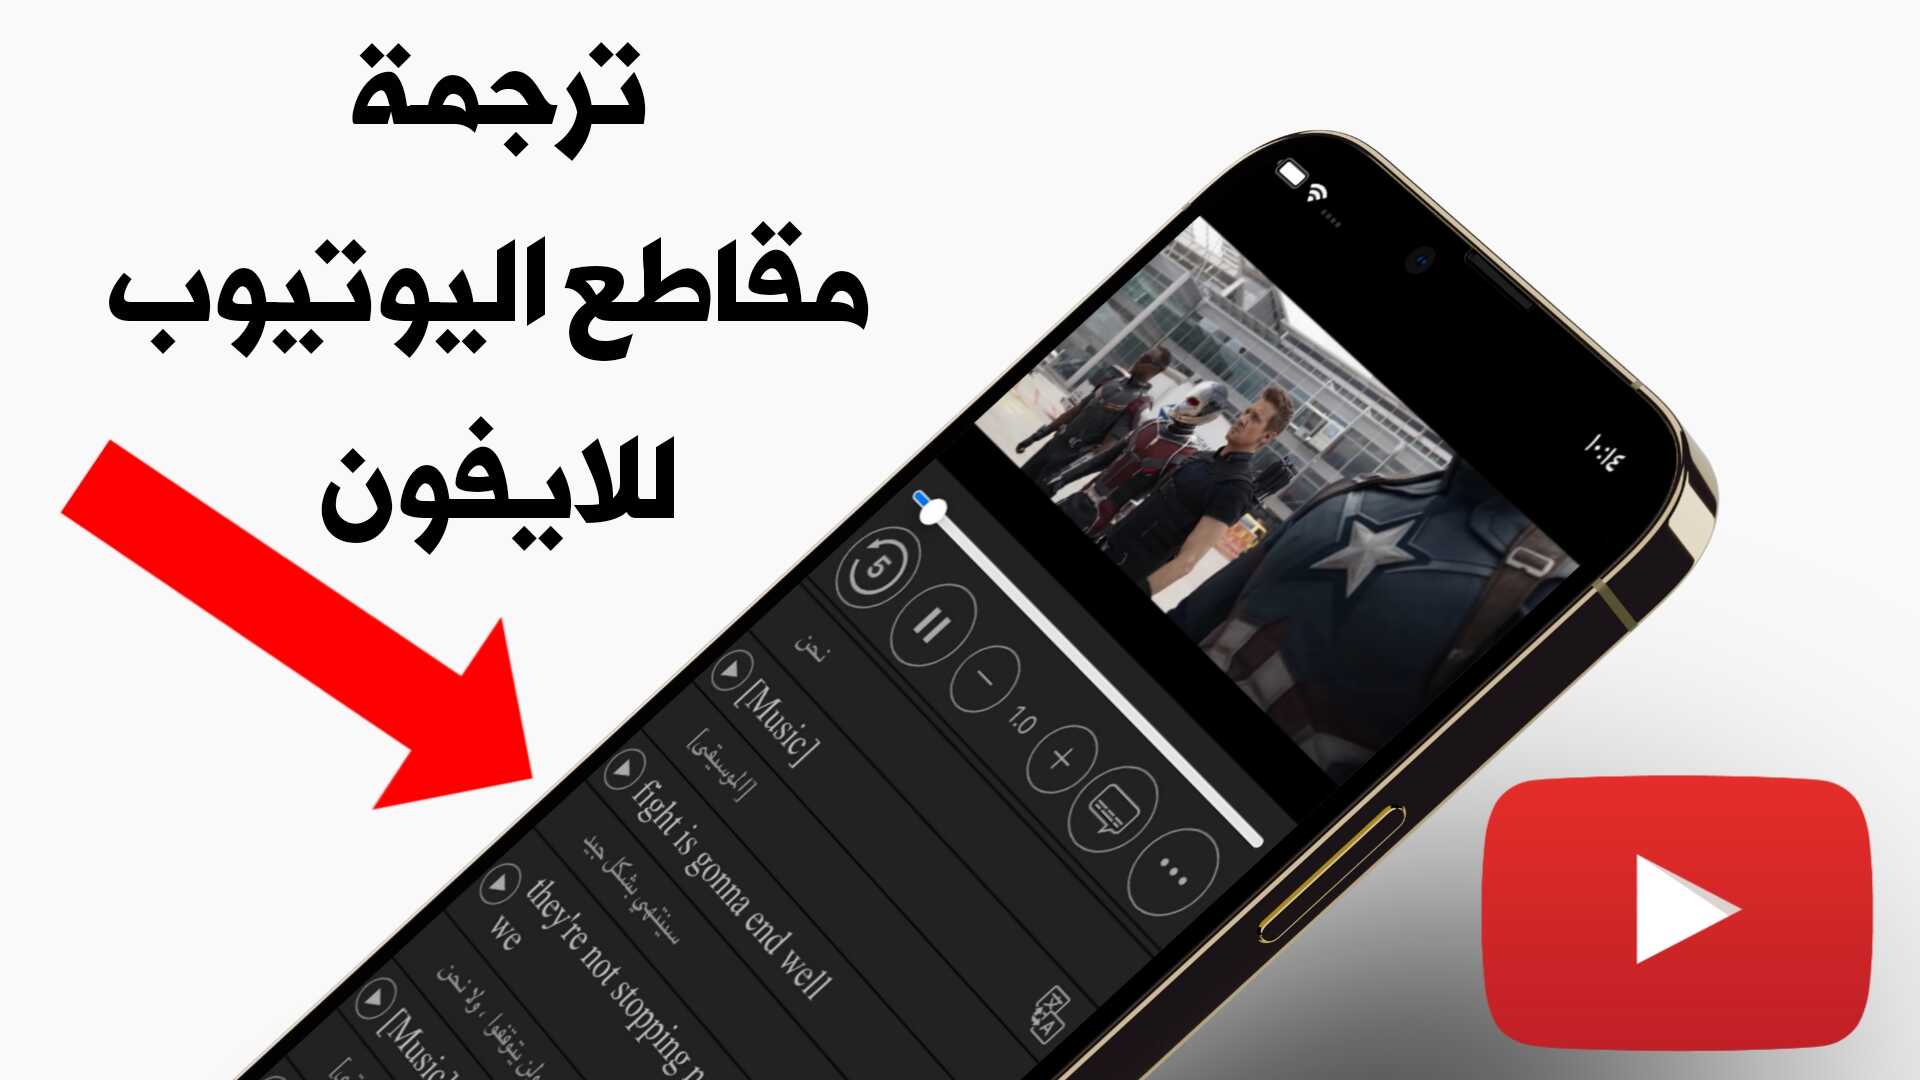 ترجمة مقاطع اليوتيوب للايفون الى اللغة العربية بشكل تلقائي